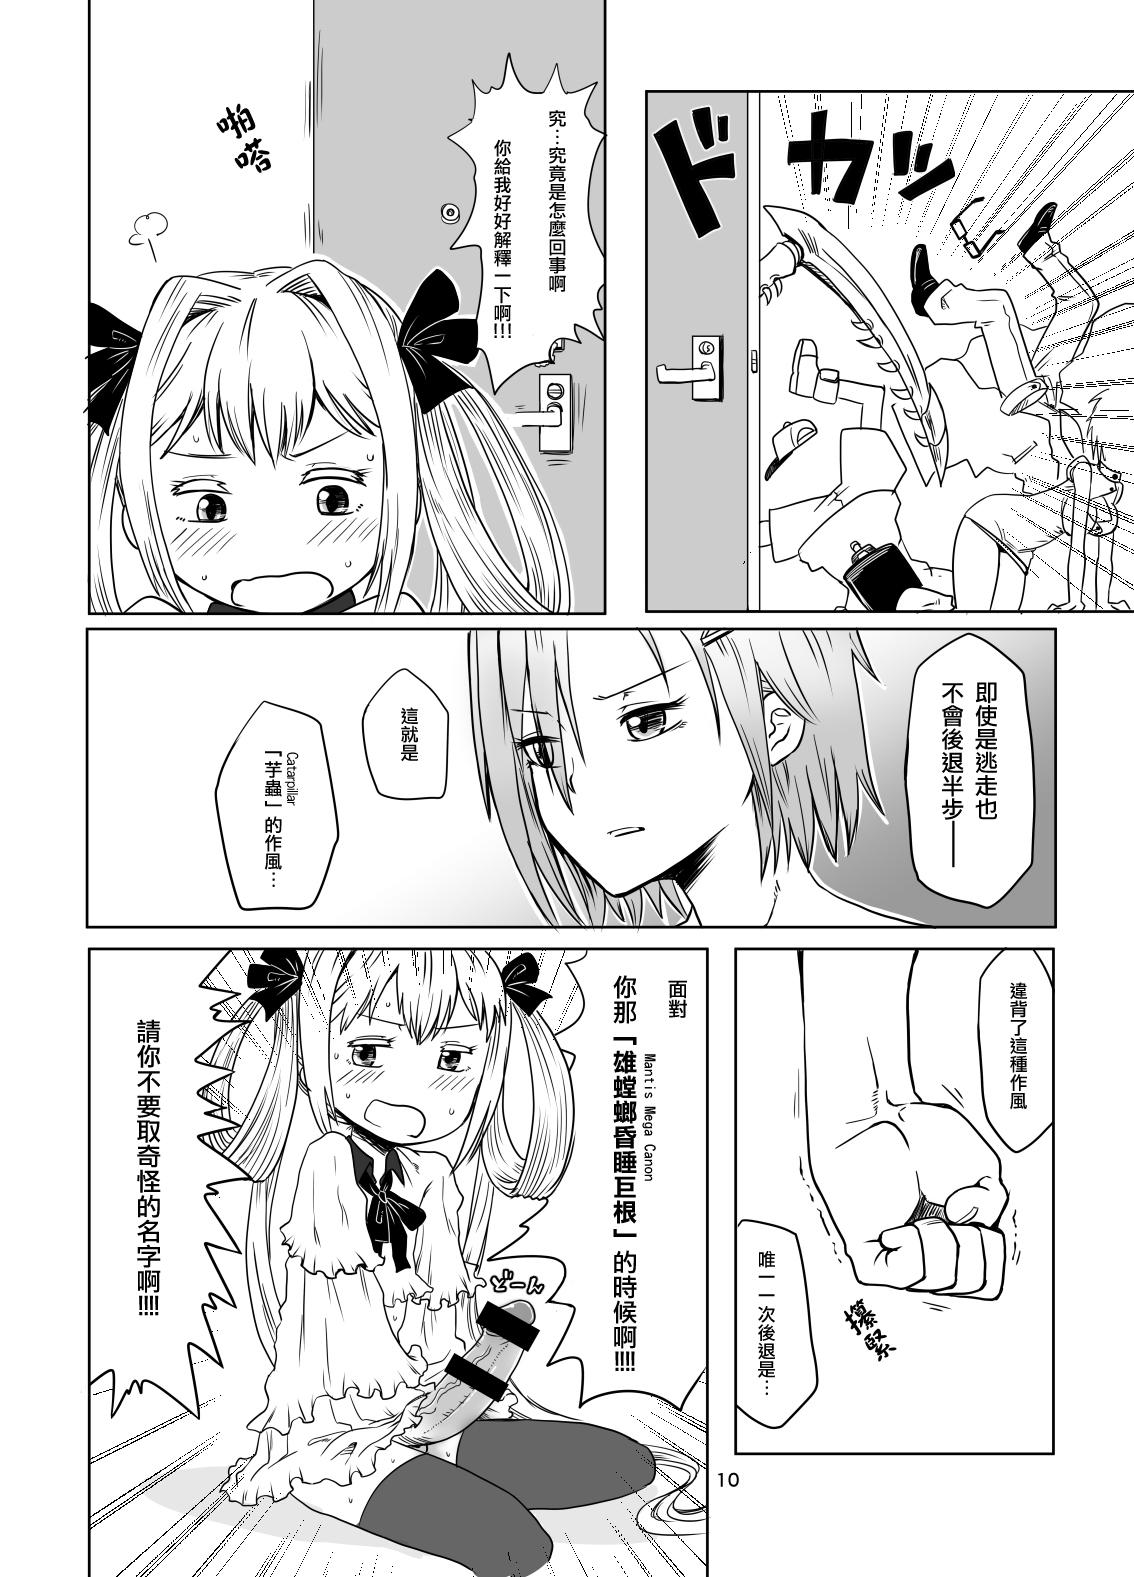 Piroca Kamakiri no Osu - Caterpillar Petera - Page 11